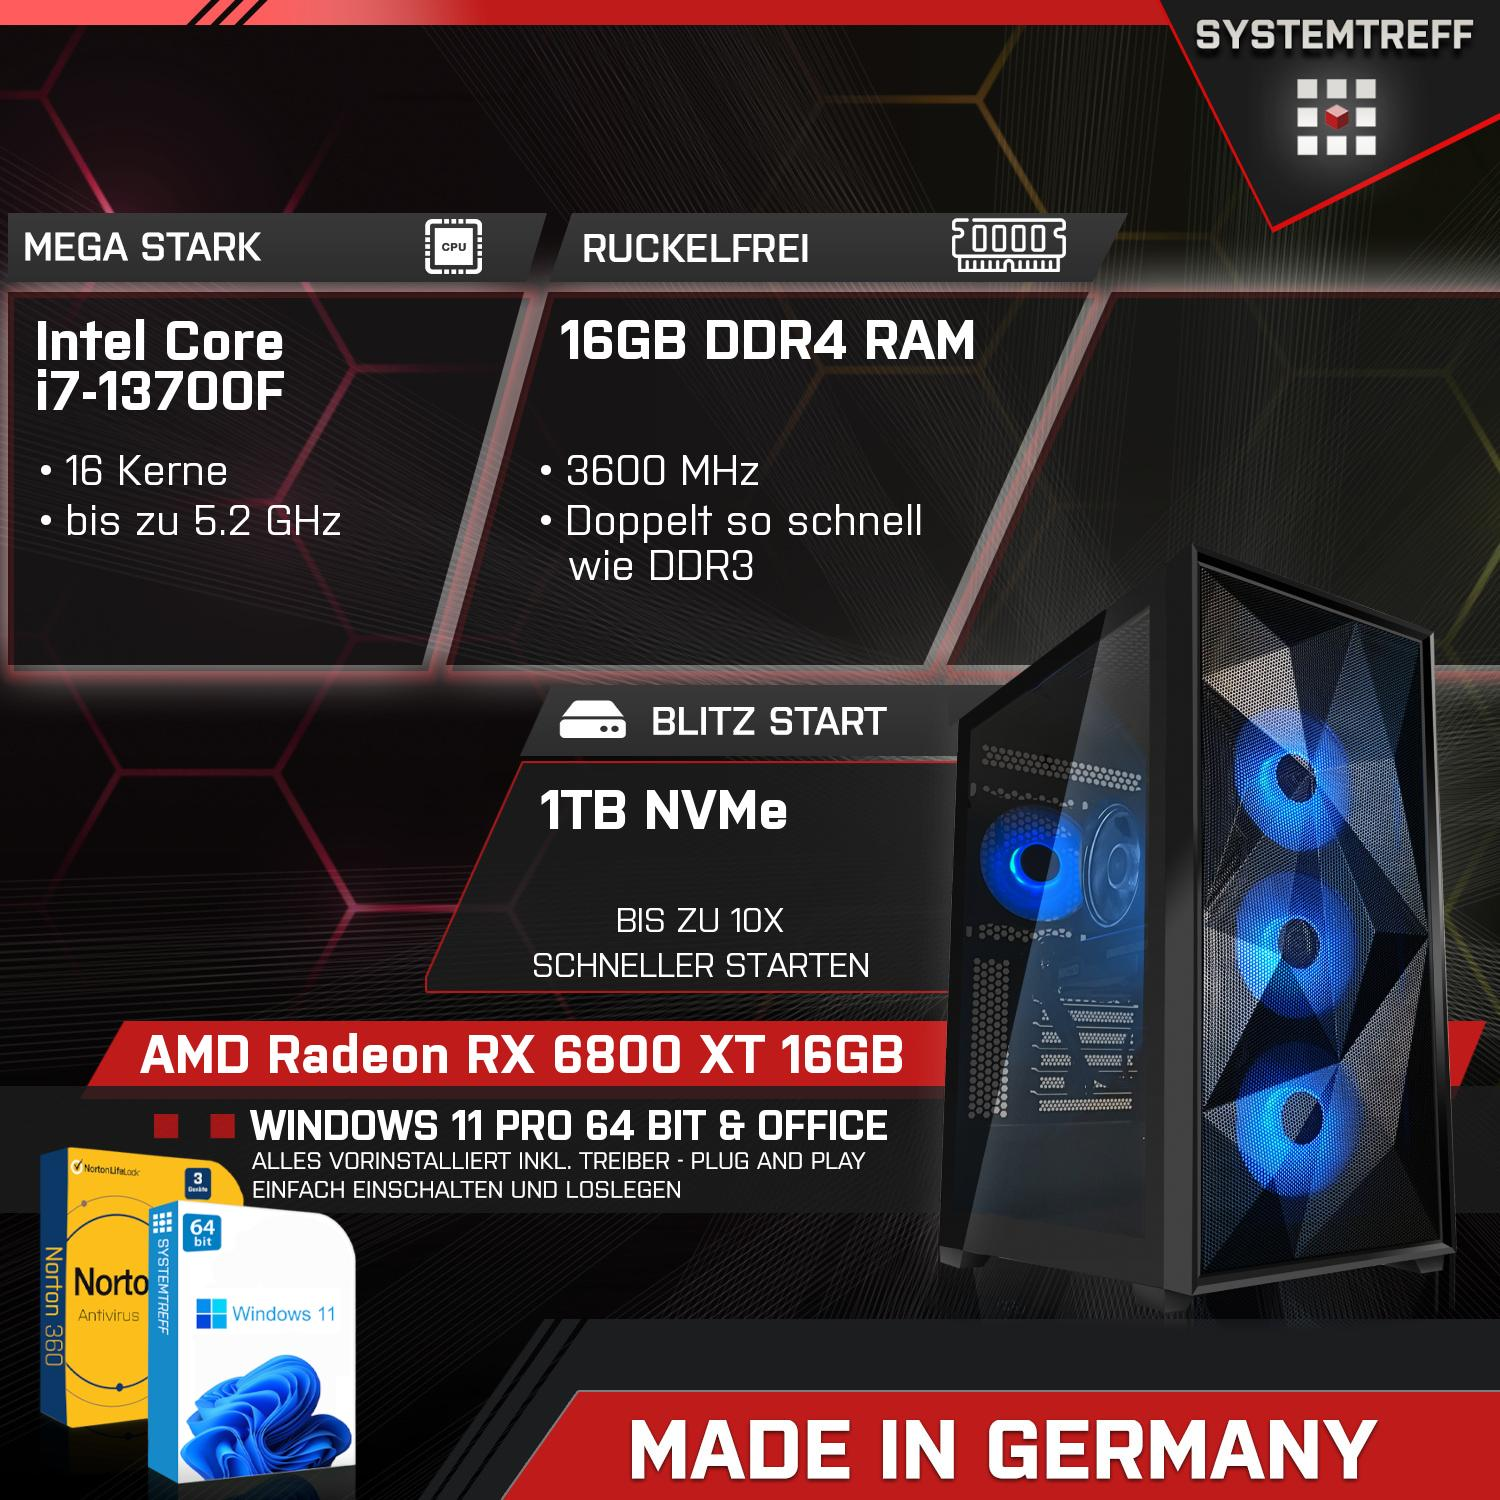 SYSTEMTREFF Gaming Komplett GDDR6, PC 1000 XT AMD mSSD, Intel GB GB 6800 16GB 16 mit i7-13700F Prozessor, i7-13700F, GB RAM, 16 Komplett Radeon Core RX